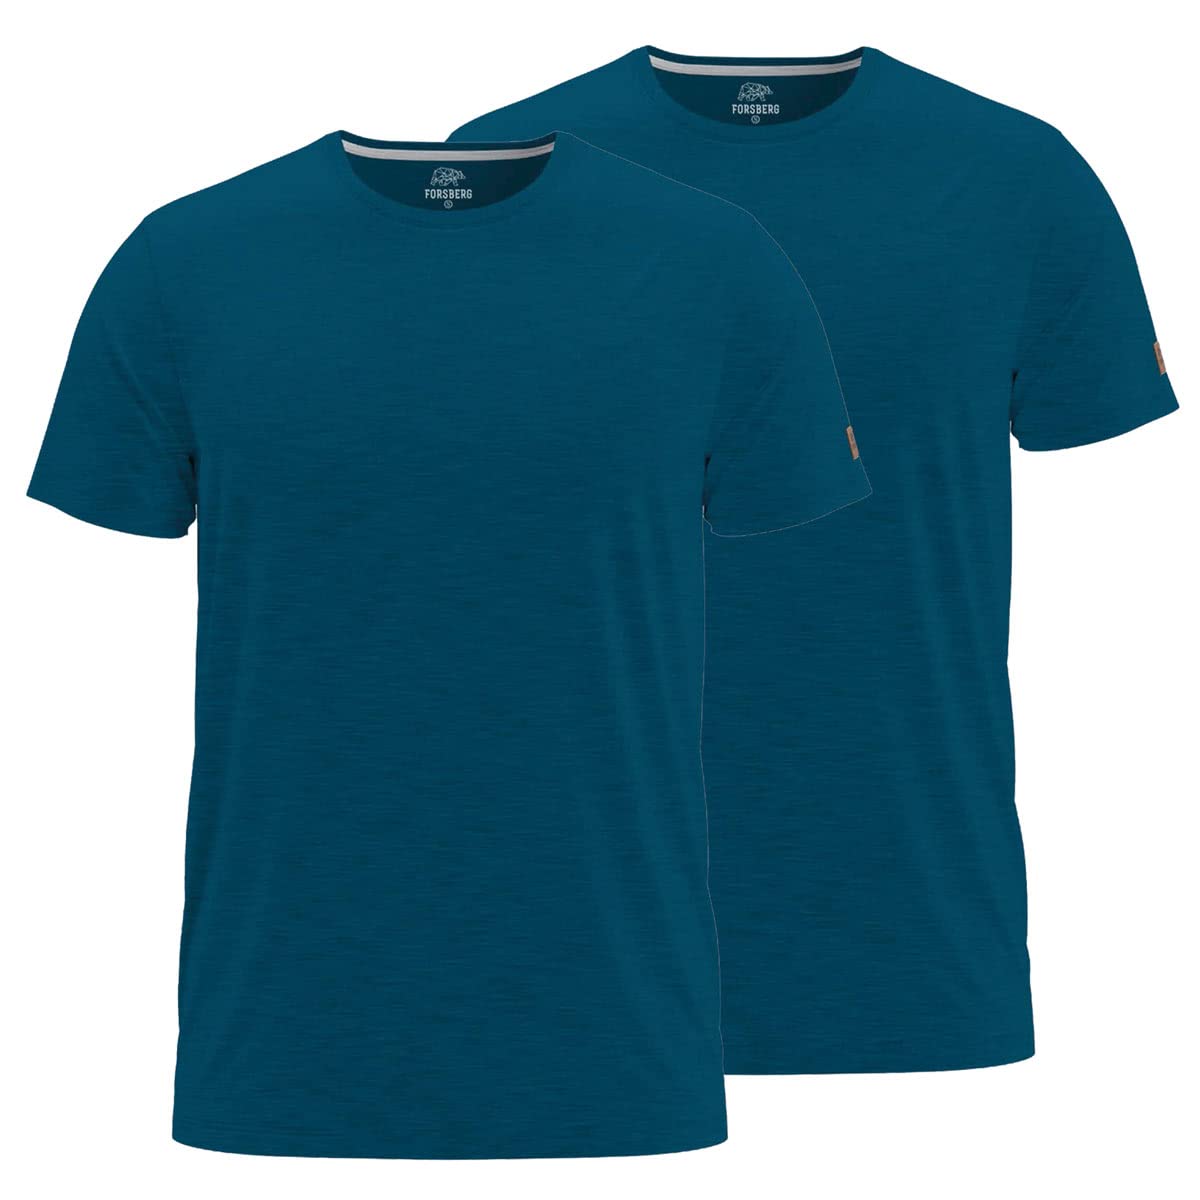 FORSBERG T-Shirt Doppelpack zum Sparpreis einfarbig Rundhals hochwertig robust bequem guter Schnitt, Farbe:Petrol, Größe:XXL